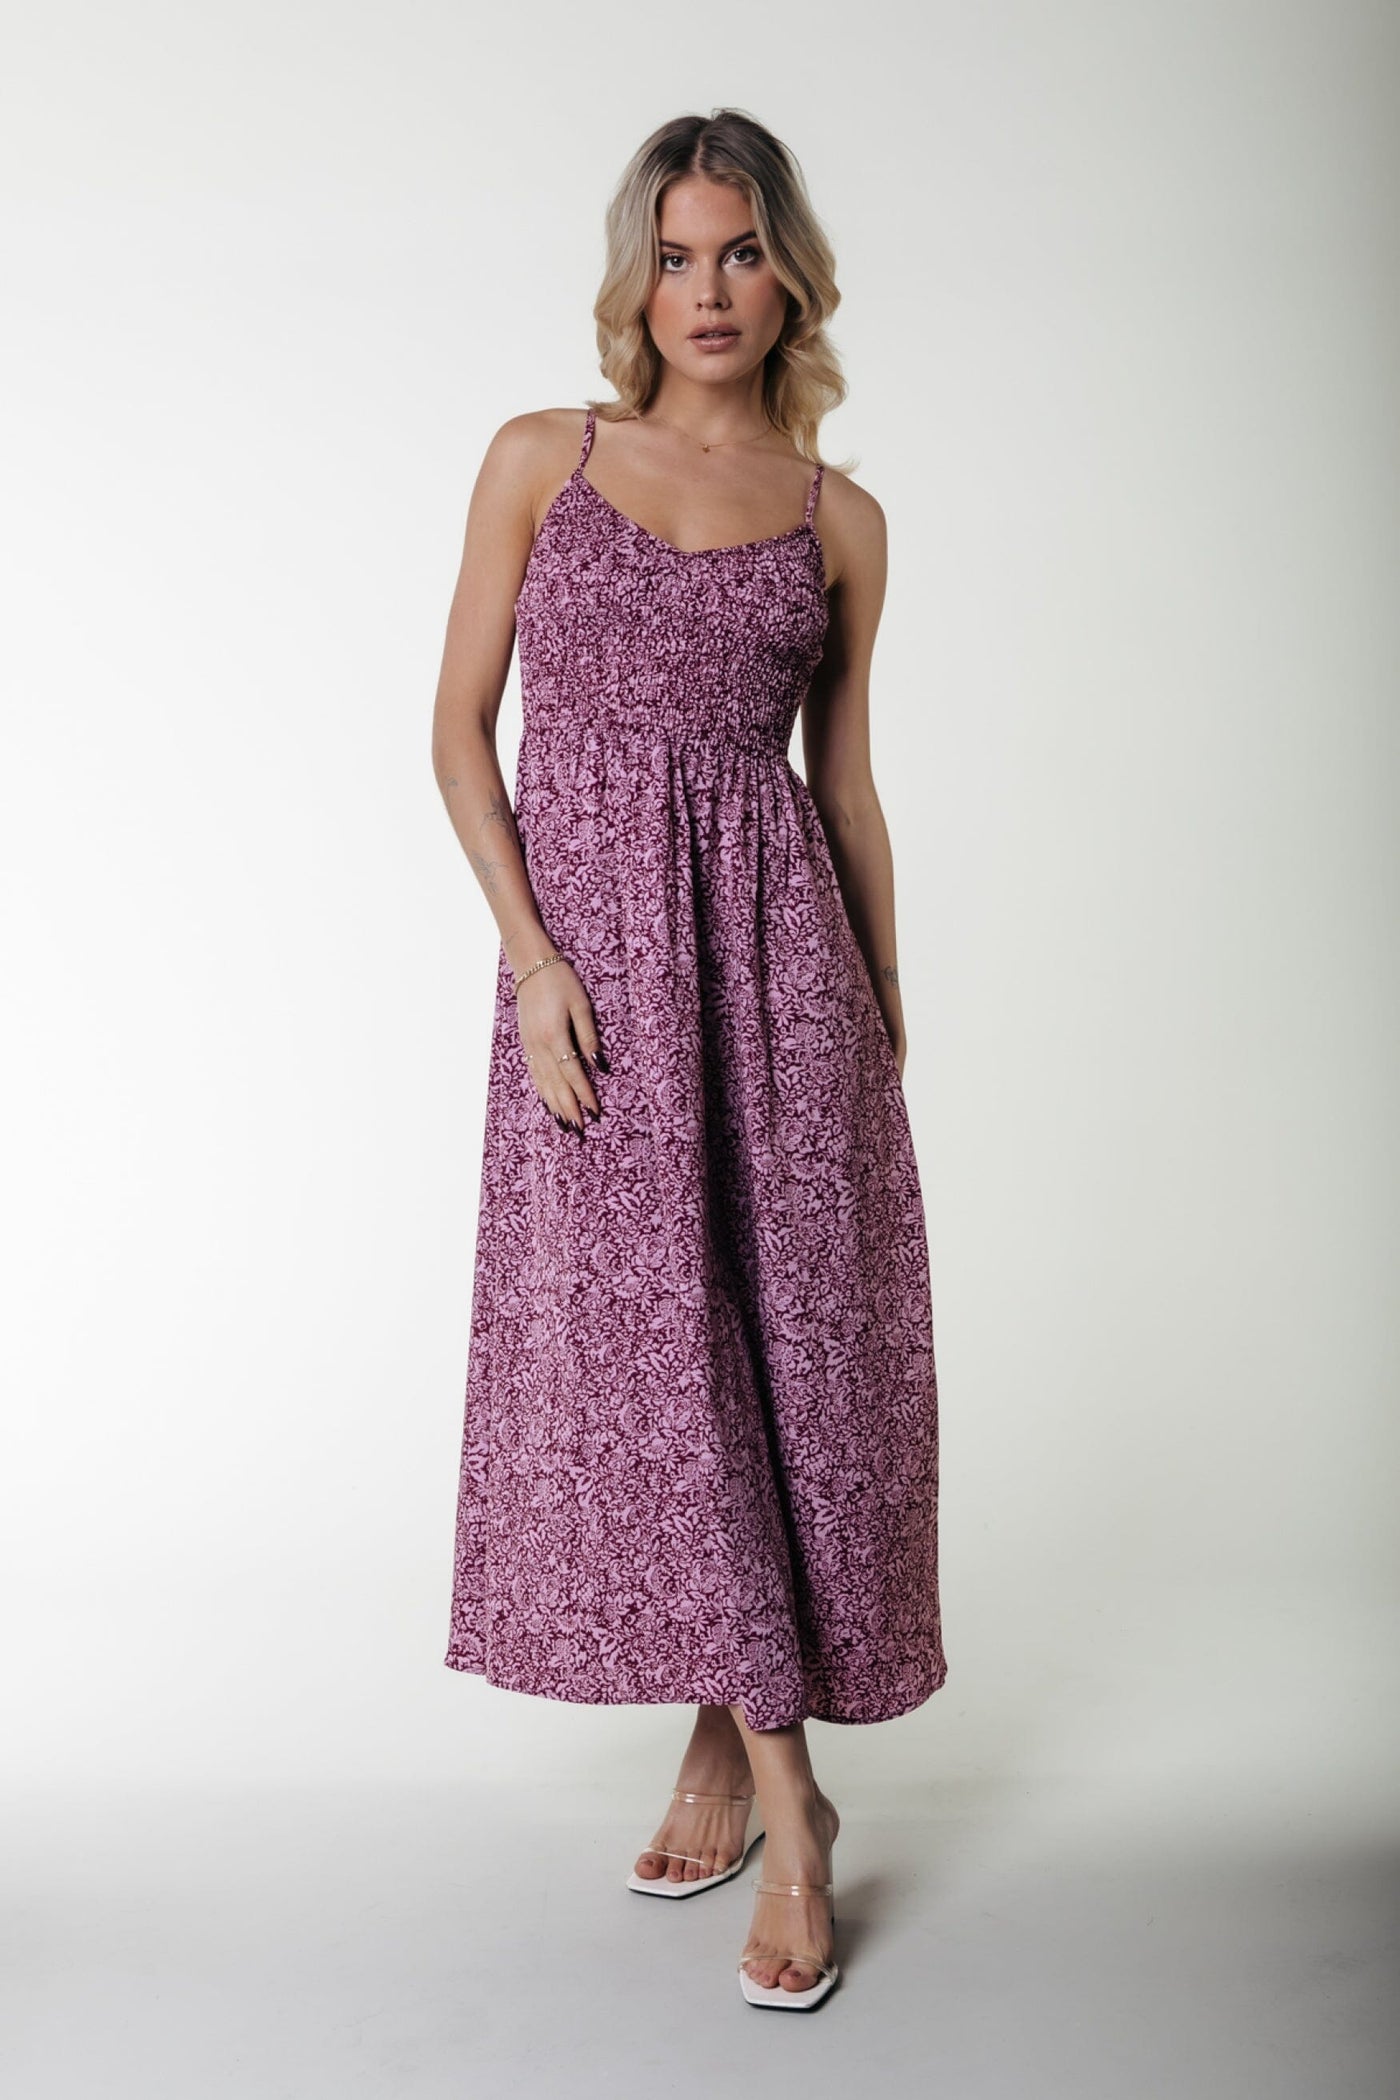 Colourful Rebel Sophie Floral Smock Maxi Dress SL | Medium pink 8720867033059